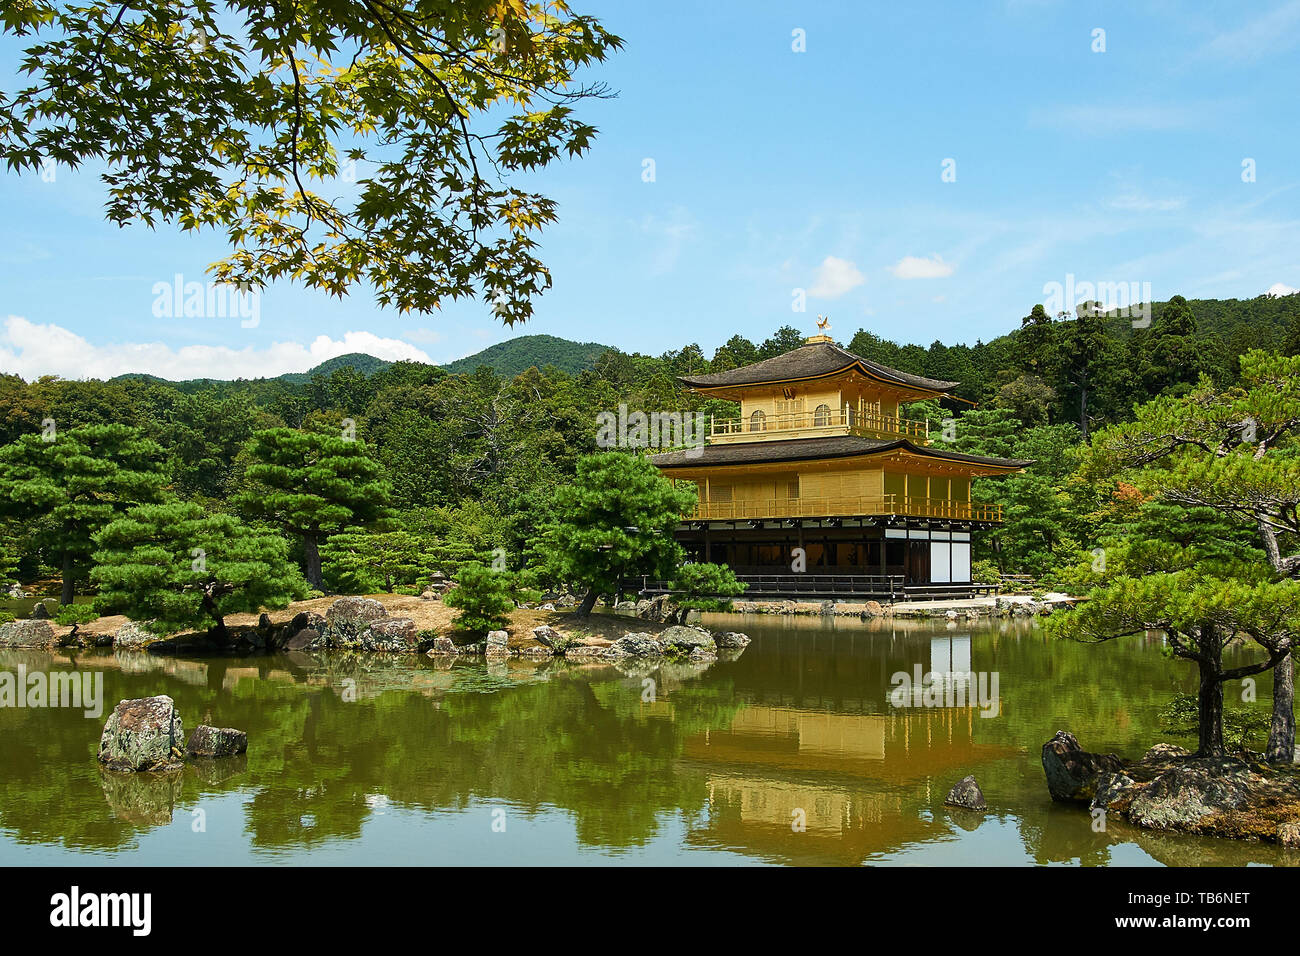 (Kinkakuji padiglione d'Oro) riflette sull'acqua, circondato da alberi e paesaggio giapponese, su una chiara, soleggiate giornate estive a Kyoto, in Giappone. Foto Stock